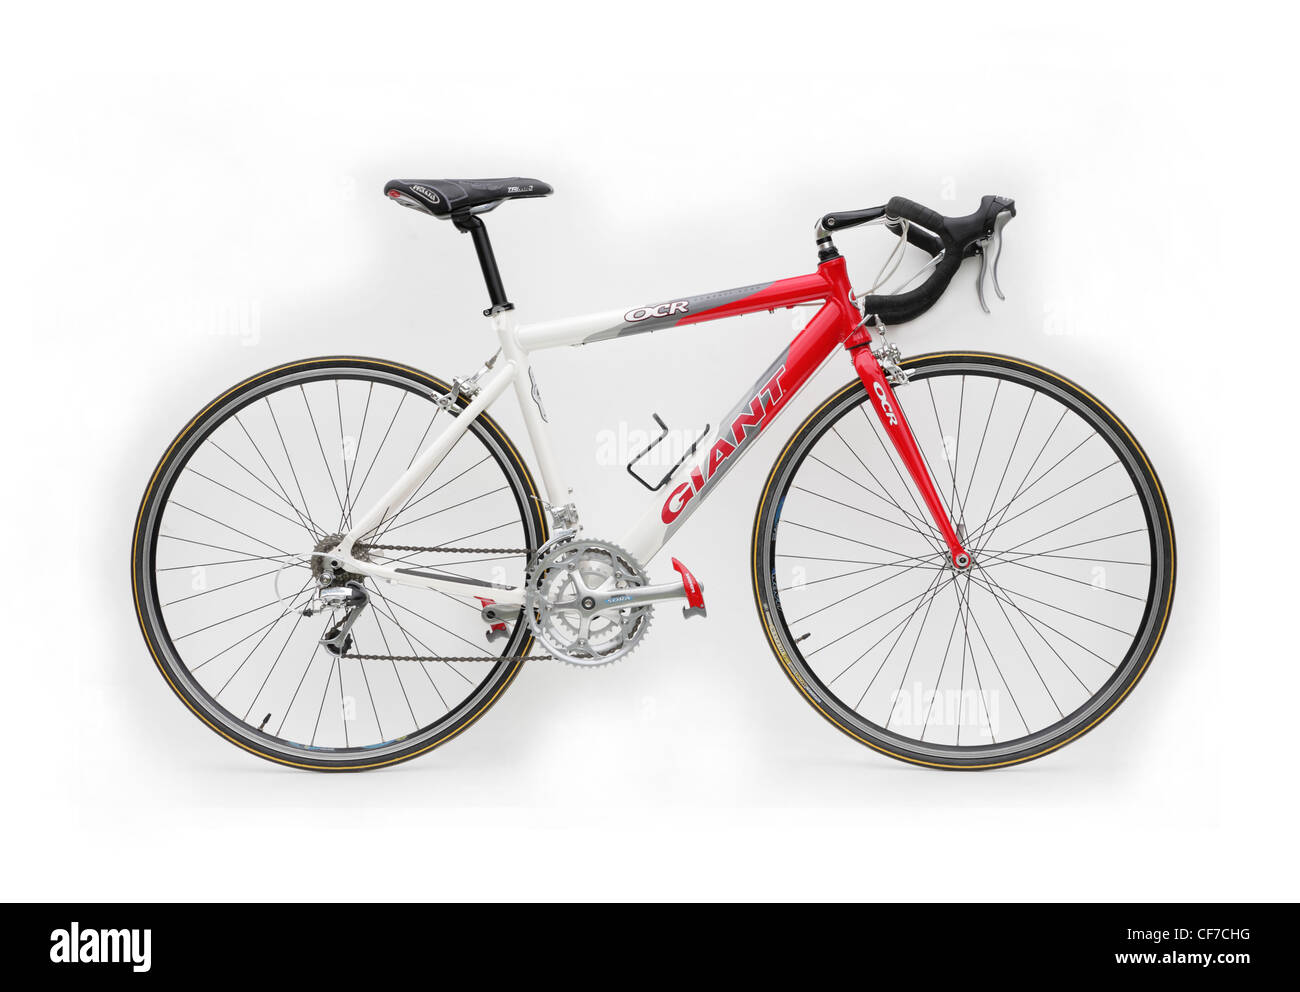 Ausschnitt einer Riesen-Marke racing Bike Zyklus mit clipless Look Pedalen isoliert auf weißem Hintergrund Stockfoto